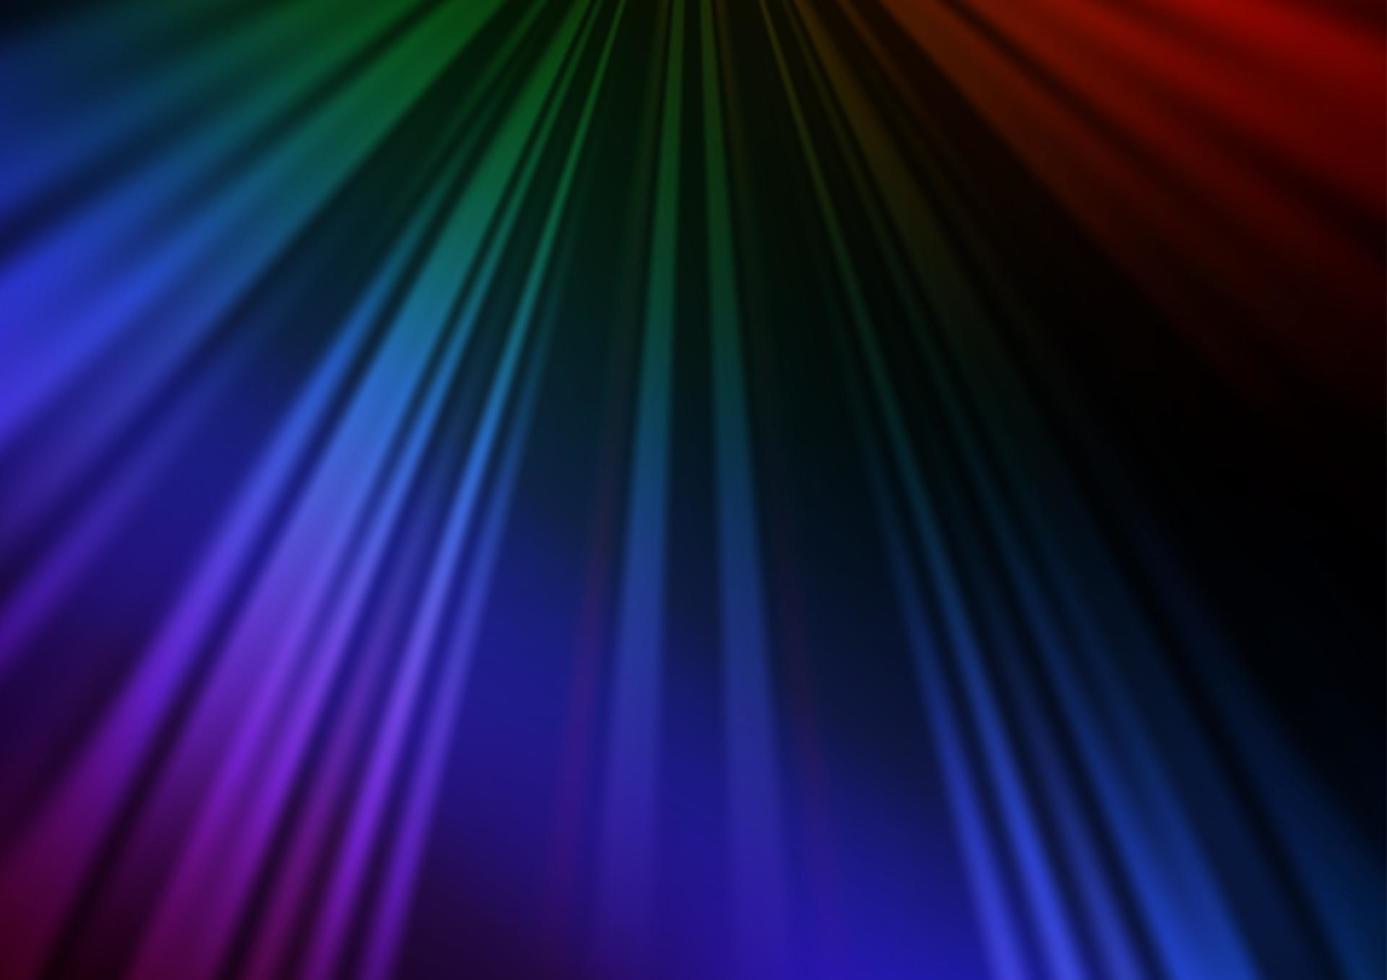 fundo escuro multicolorido do vetor do arco-íris com linhas retas.